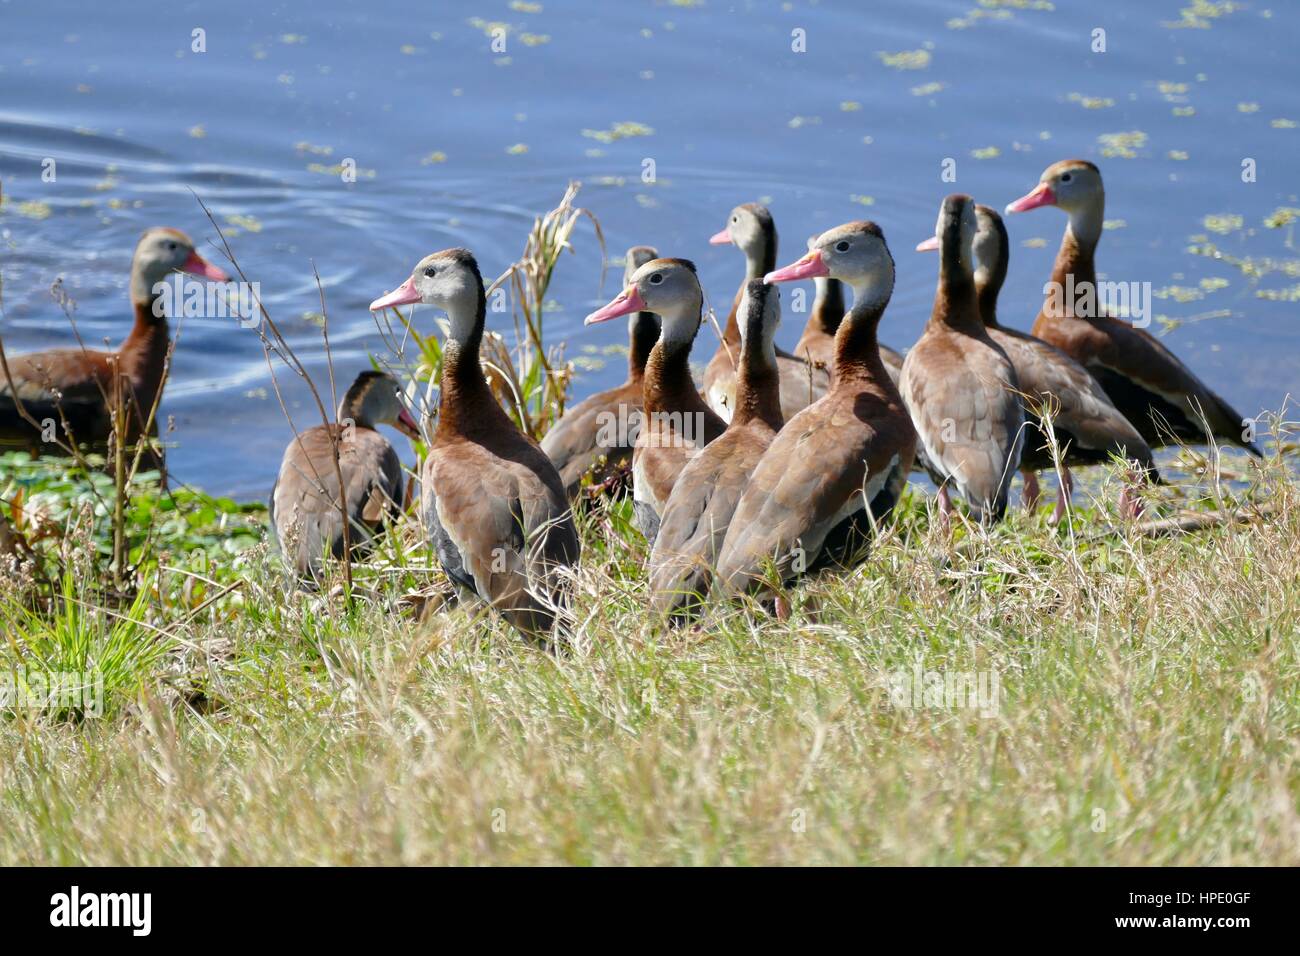 Gregge di anatre fischiate nere in un gruppo sul bordo di uno stagno. Sweetwater Wetlands Park, Gainesville, Florida, Stati Uniti Foto Stock